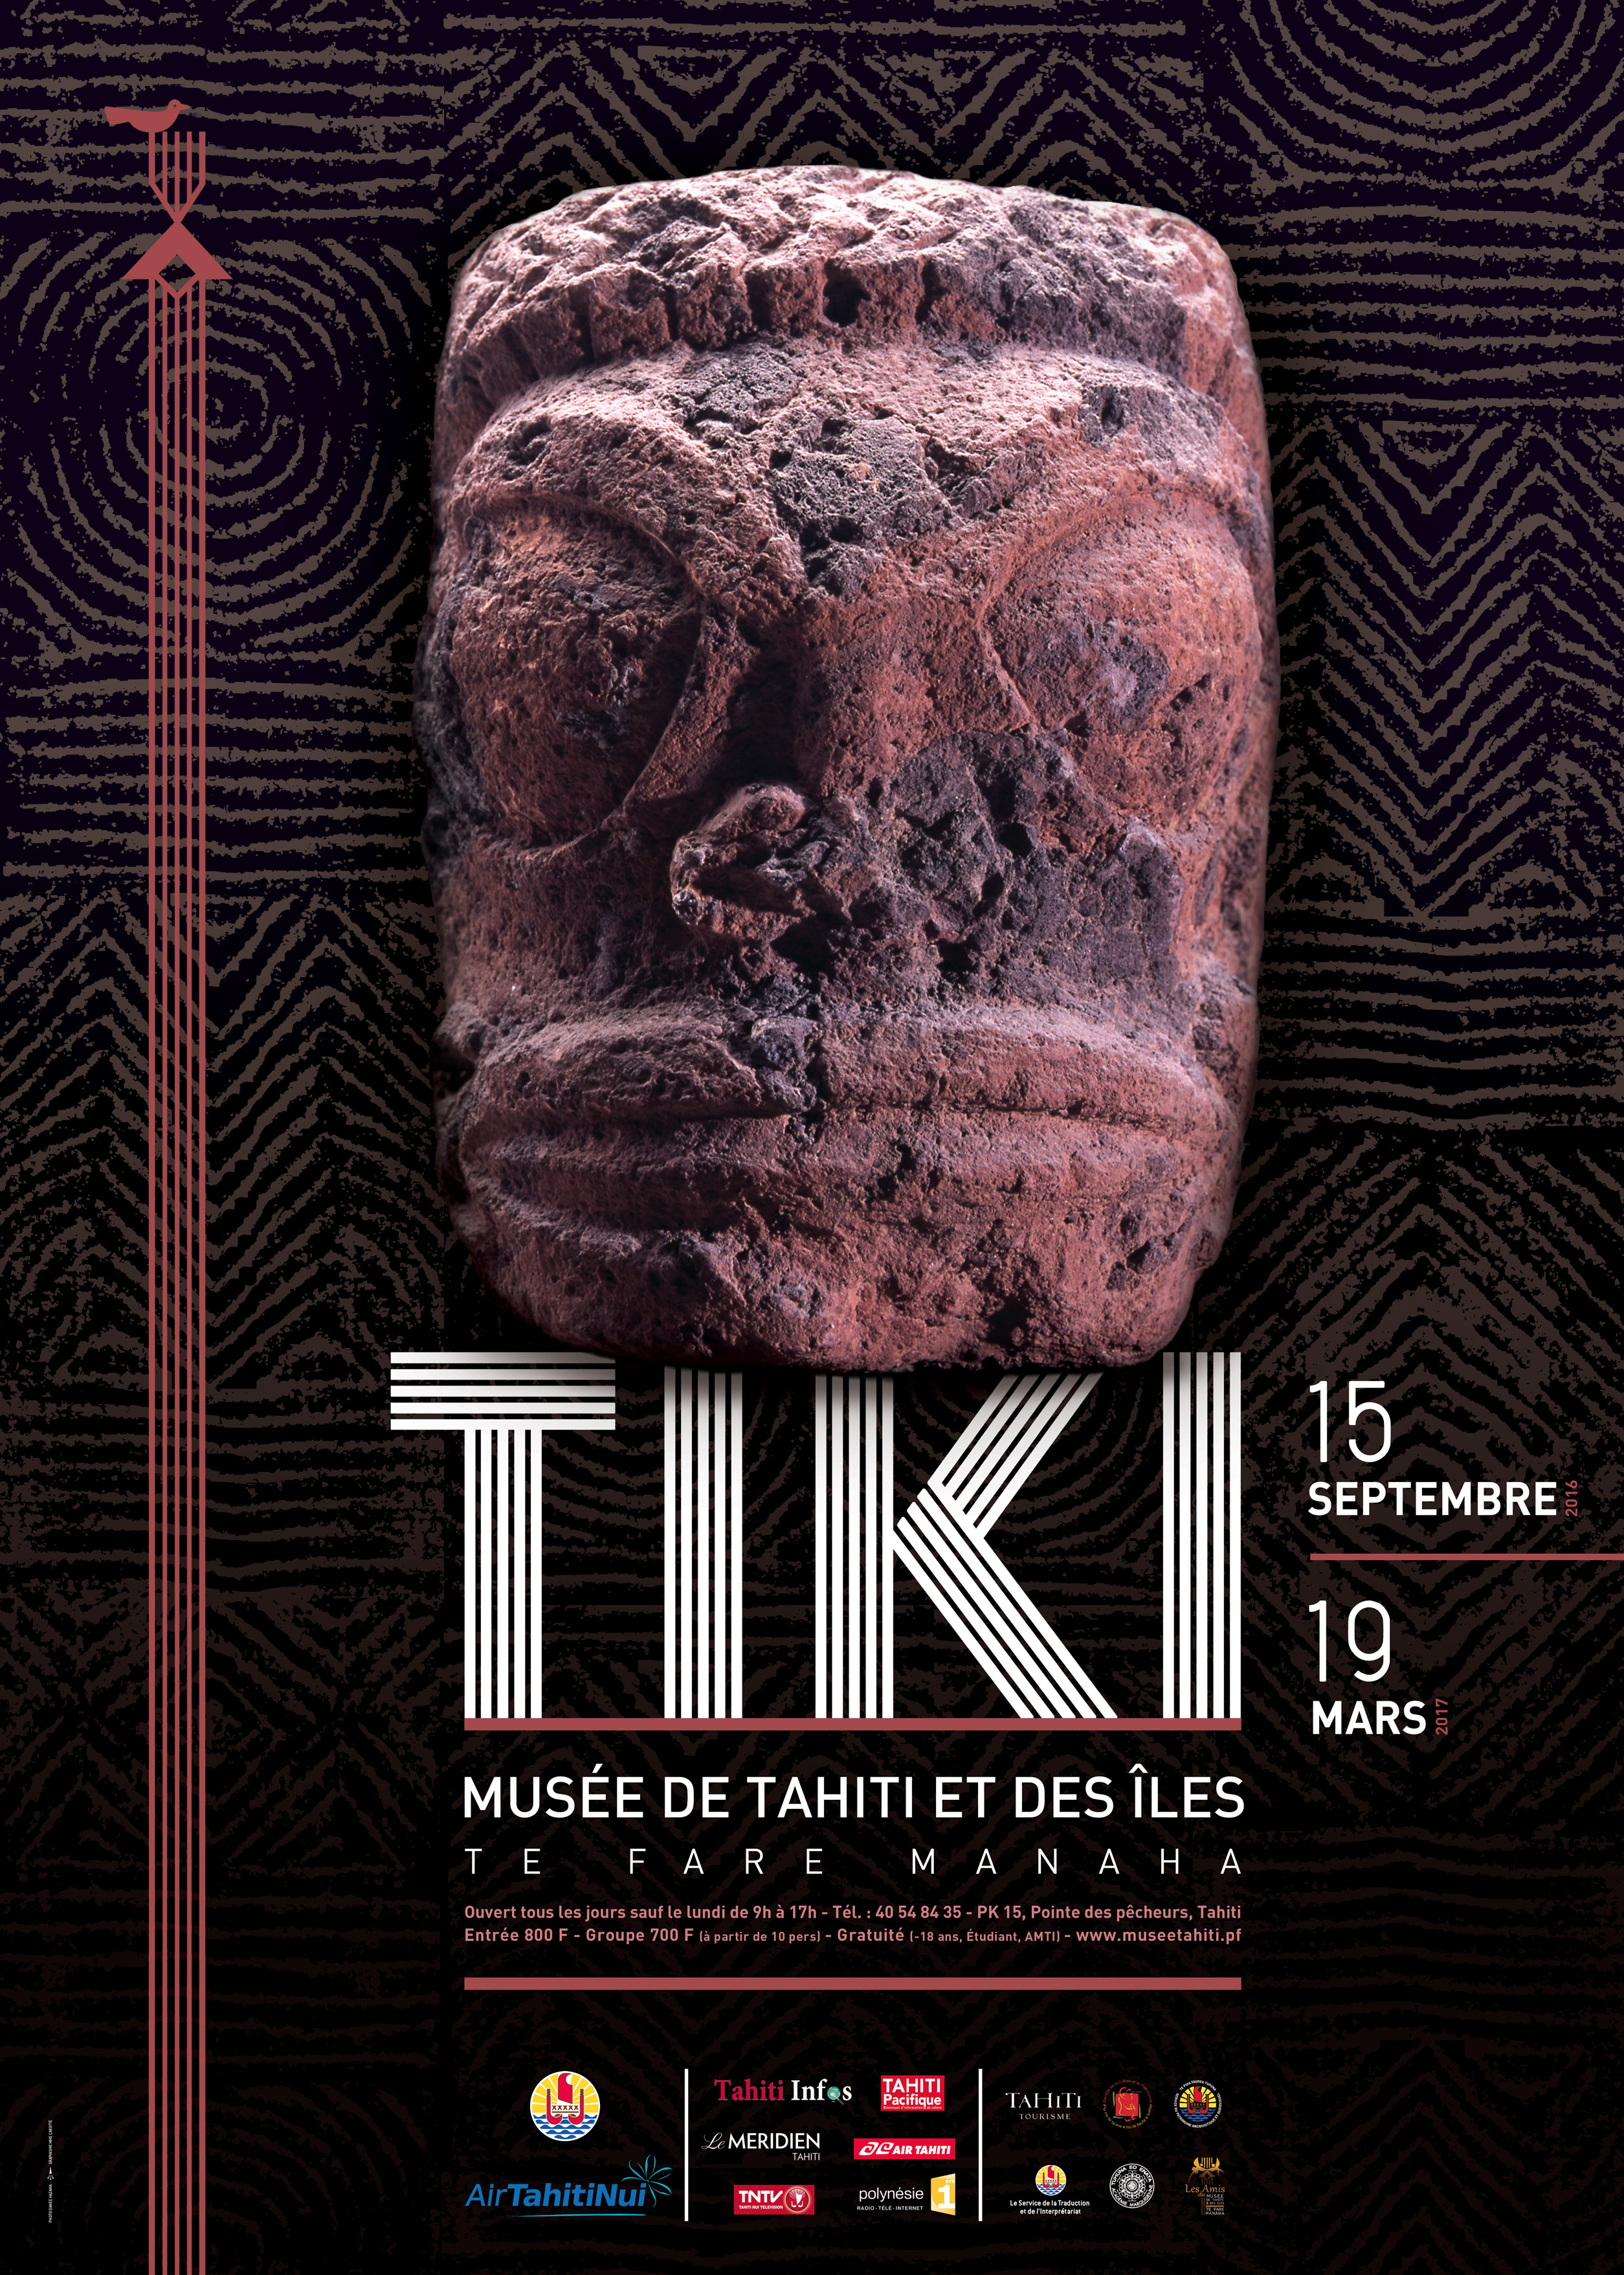 Exposition "Tiki" : à la découverte de la culture marquisienne